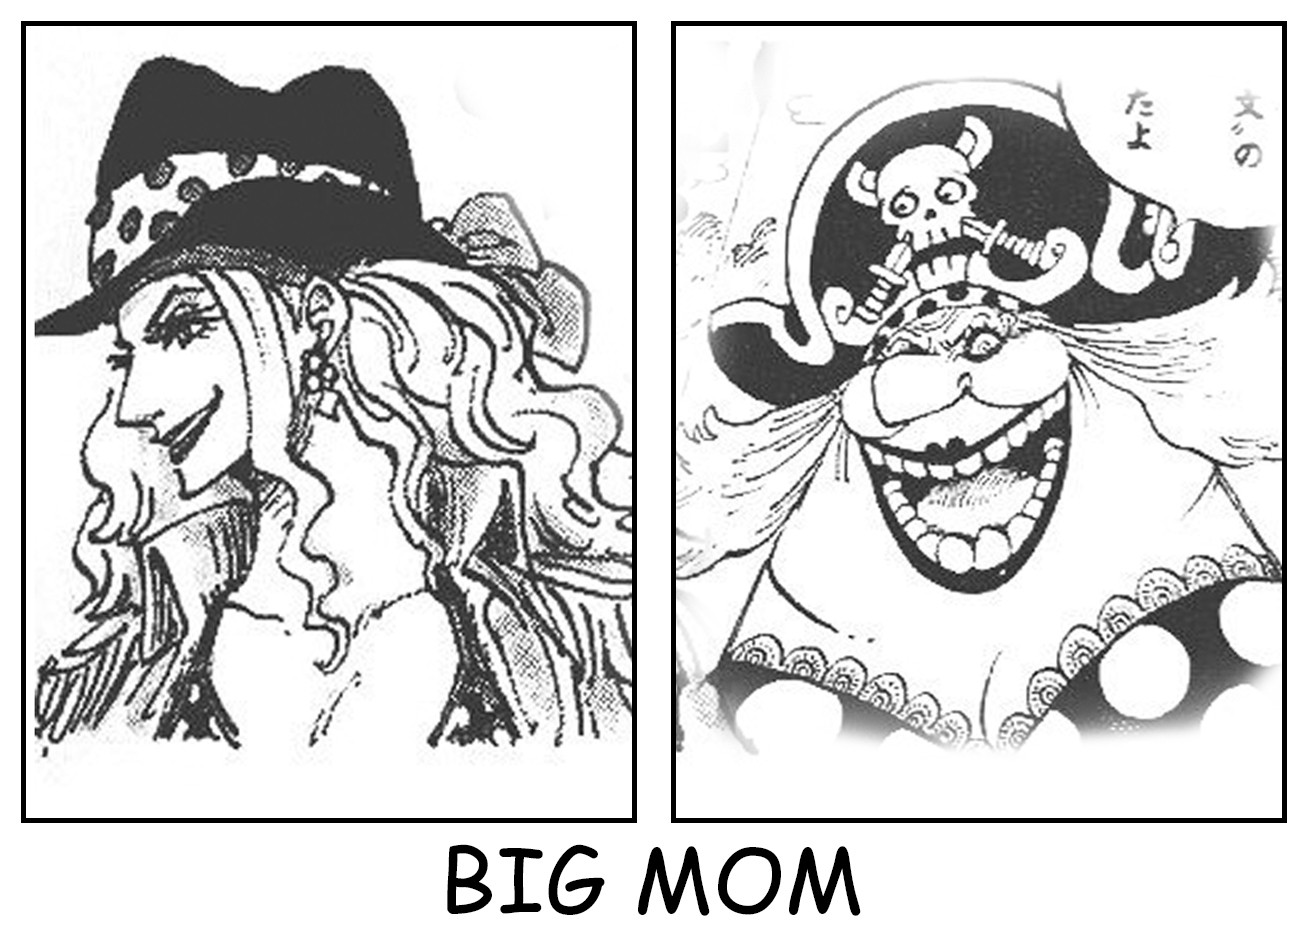 Các fan của One Piece chắc chắn sẽ không thể bỏ qua những hình ảnh đầy sức mạnh và nhan sắc tuyệt vời của các nhân vật trong truyện. Xem qua ảnh các nhân vật One Piece, trong đó có cả Big Mom, để khám phá thế giới đầy màu sắc của manga này.